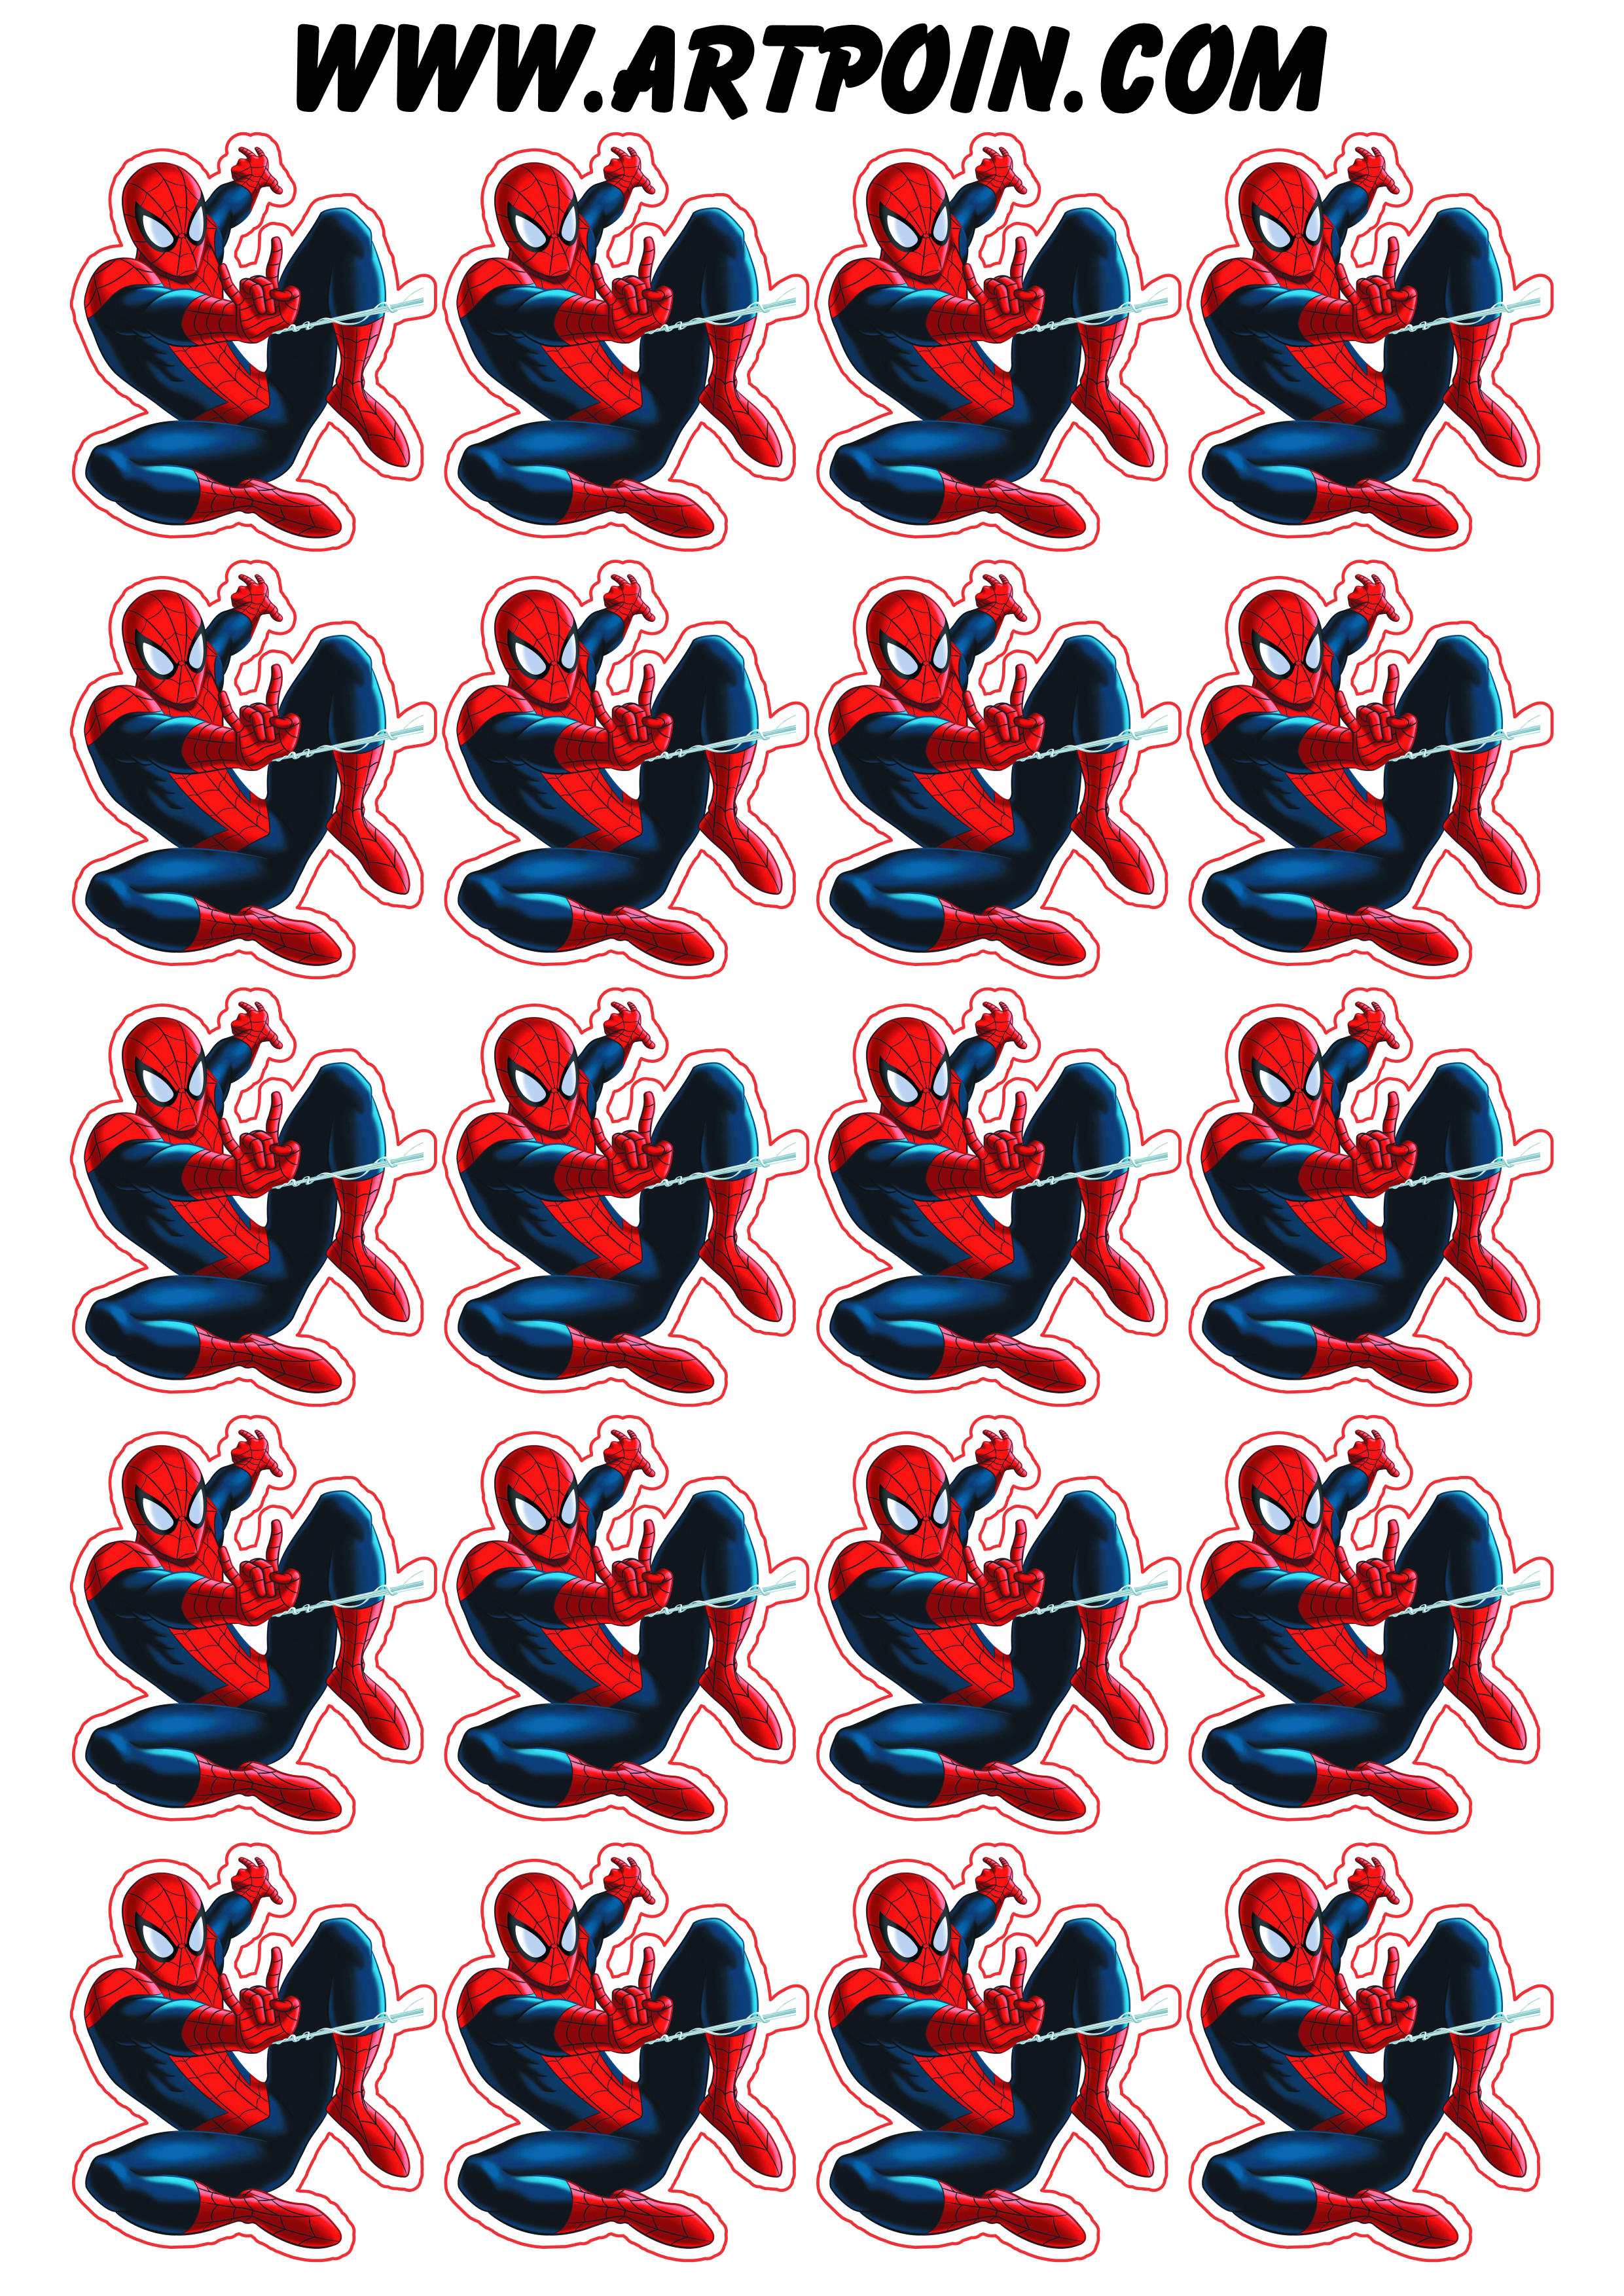 Homem aranha ultimate spider-man adesivo tag sticker decoração de festa artigos de papelaria png